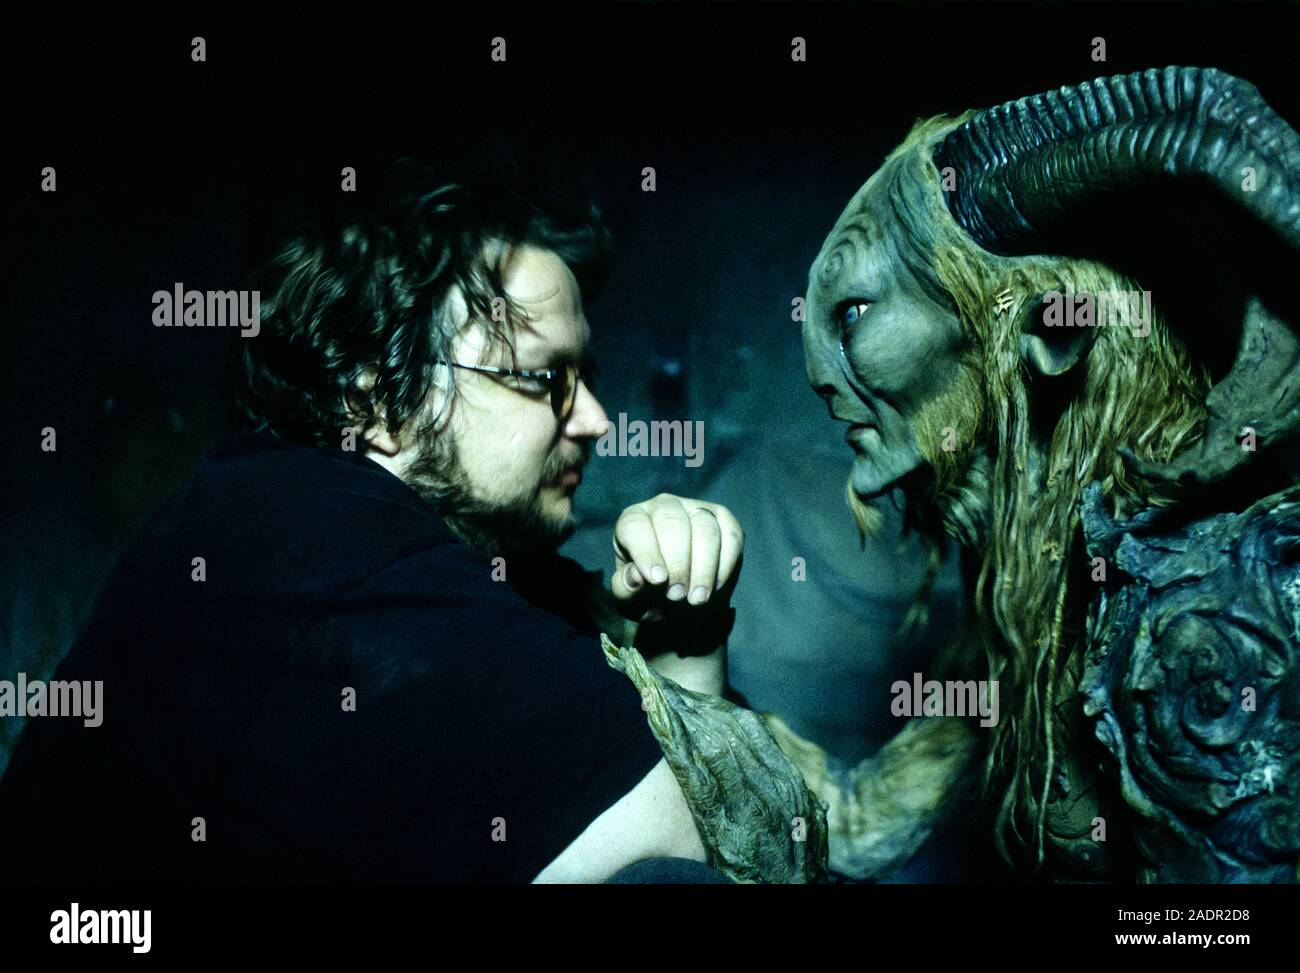 Guillermo del Toro sur le plateau avec Doug Jones comme la faune au complet un miroir pendant le tournage de Le Labyrinthe de Pan (2006) sur une jeune fille vivant en Espagne Falangist au sujet d'une fille s'échappe l'horreur autour d'elle en entrant dans une étrange monde imaginaire. Banque D'Images